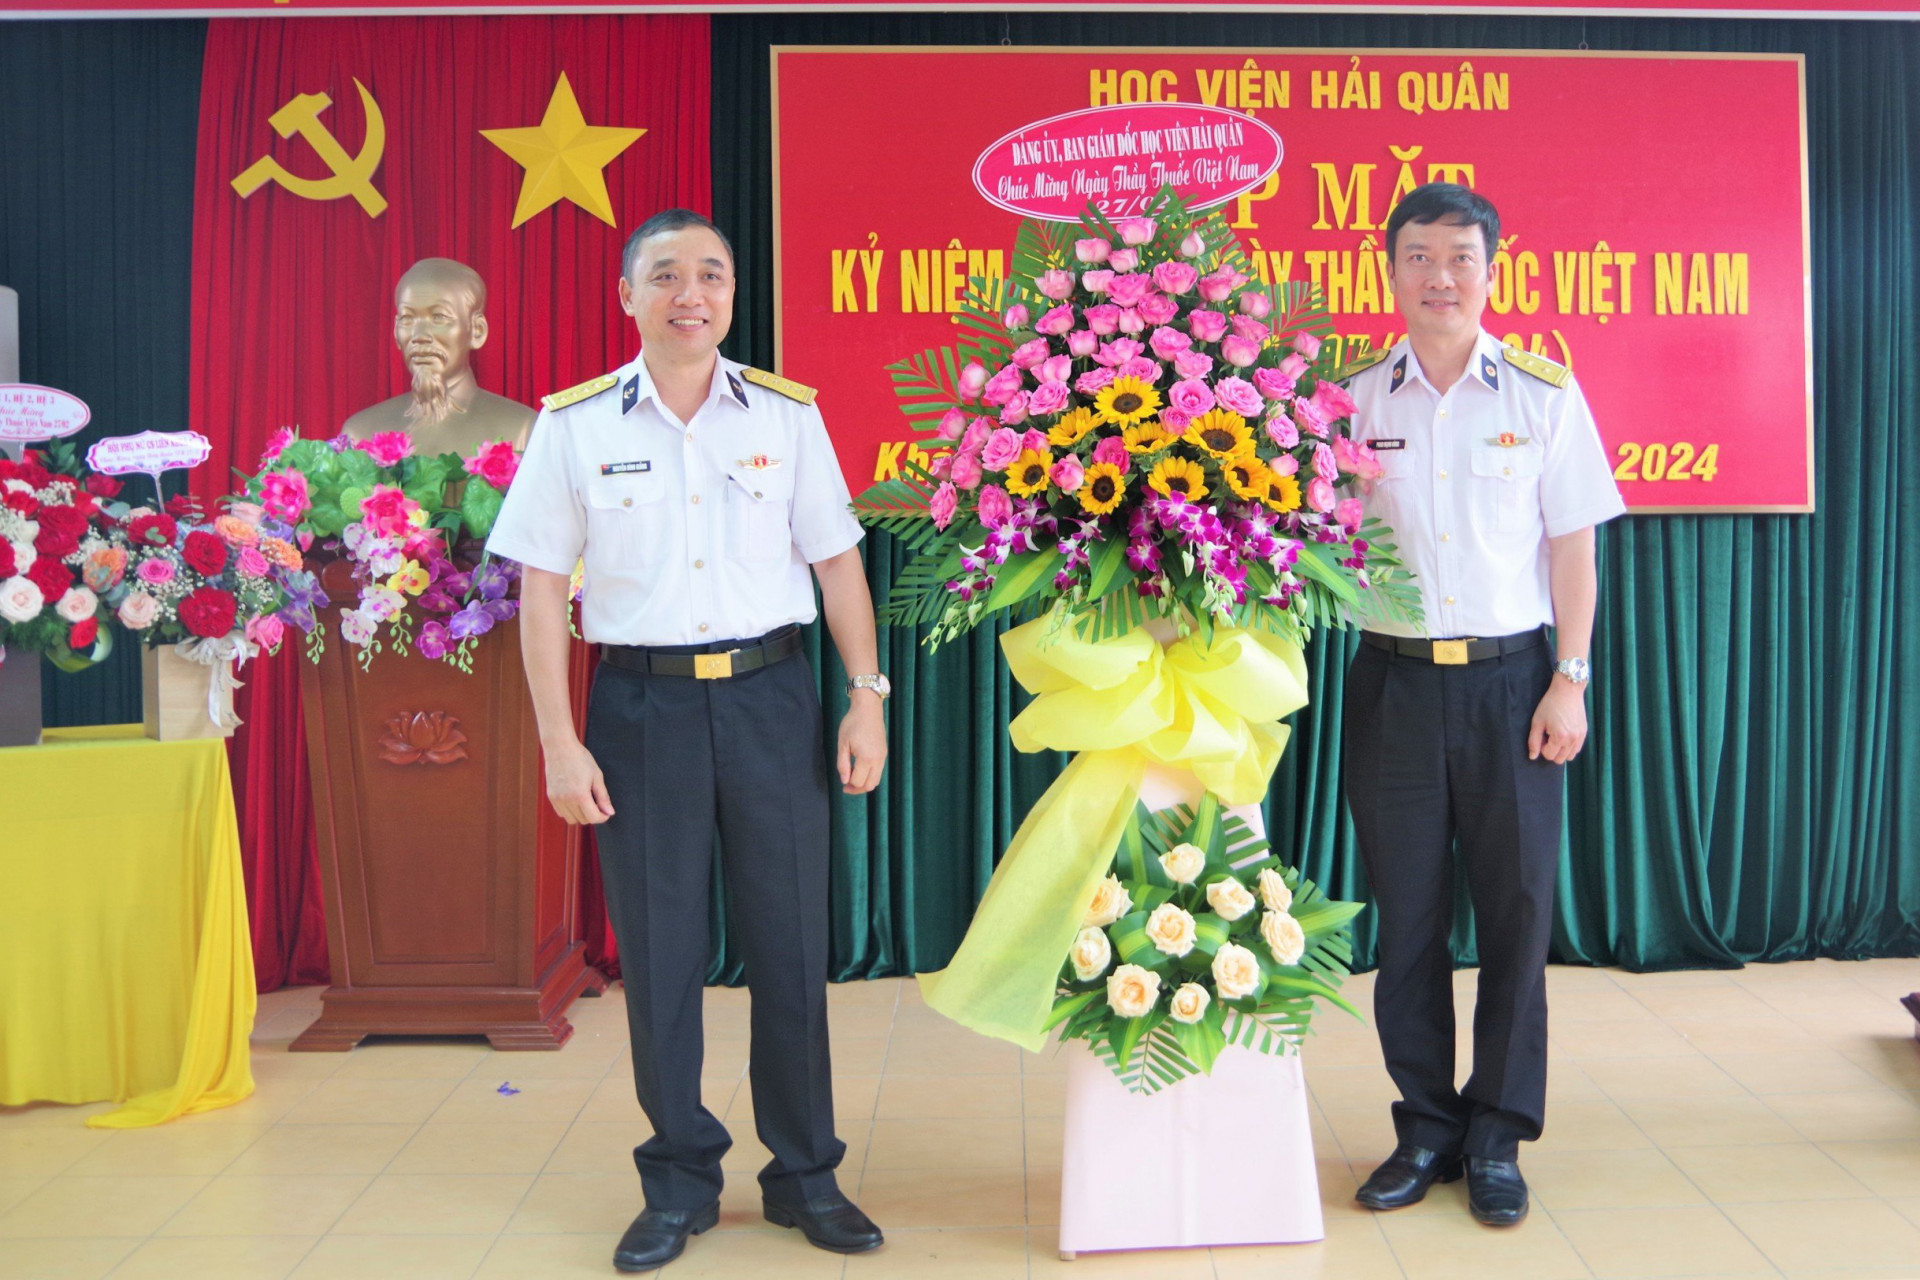 Phó Giám đốc Học viện Hải quân tặng hoa chúc mừng ngành quân y của học viện.